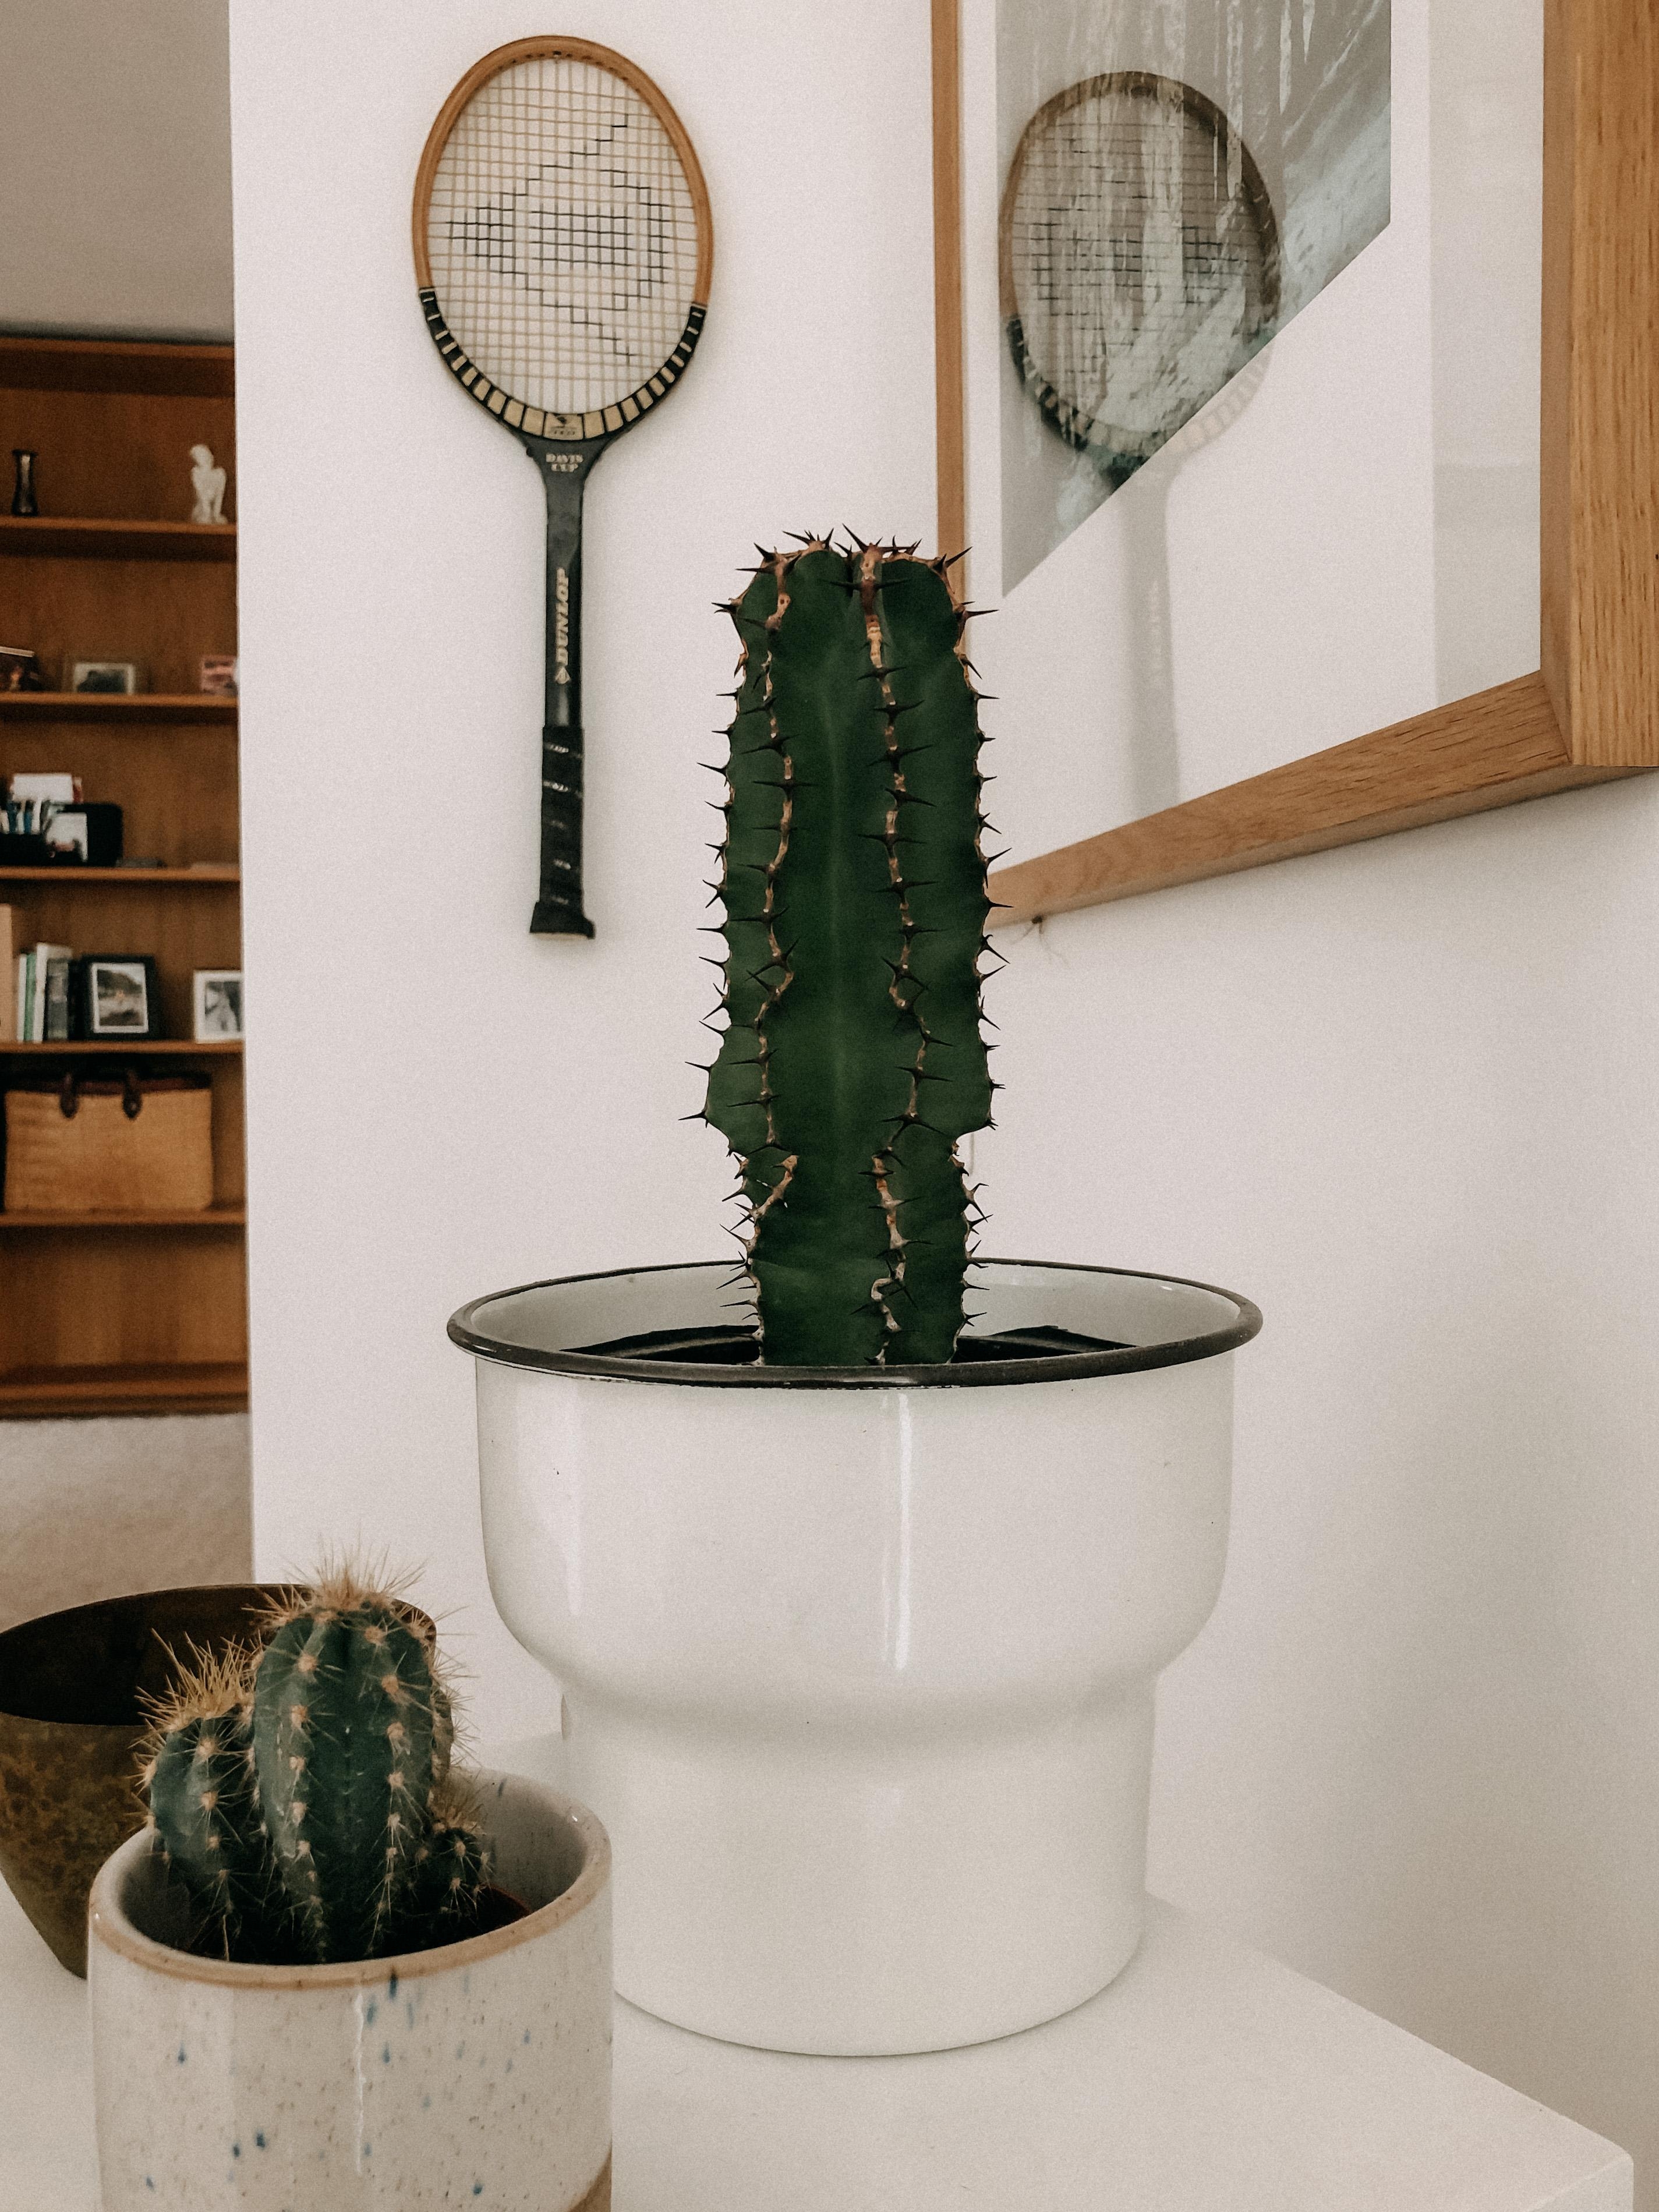 #wohnzimmer #vintagedecoration #kaktus #einbauschrank #eiche #holzliebe #dunlop #tennis